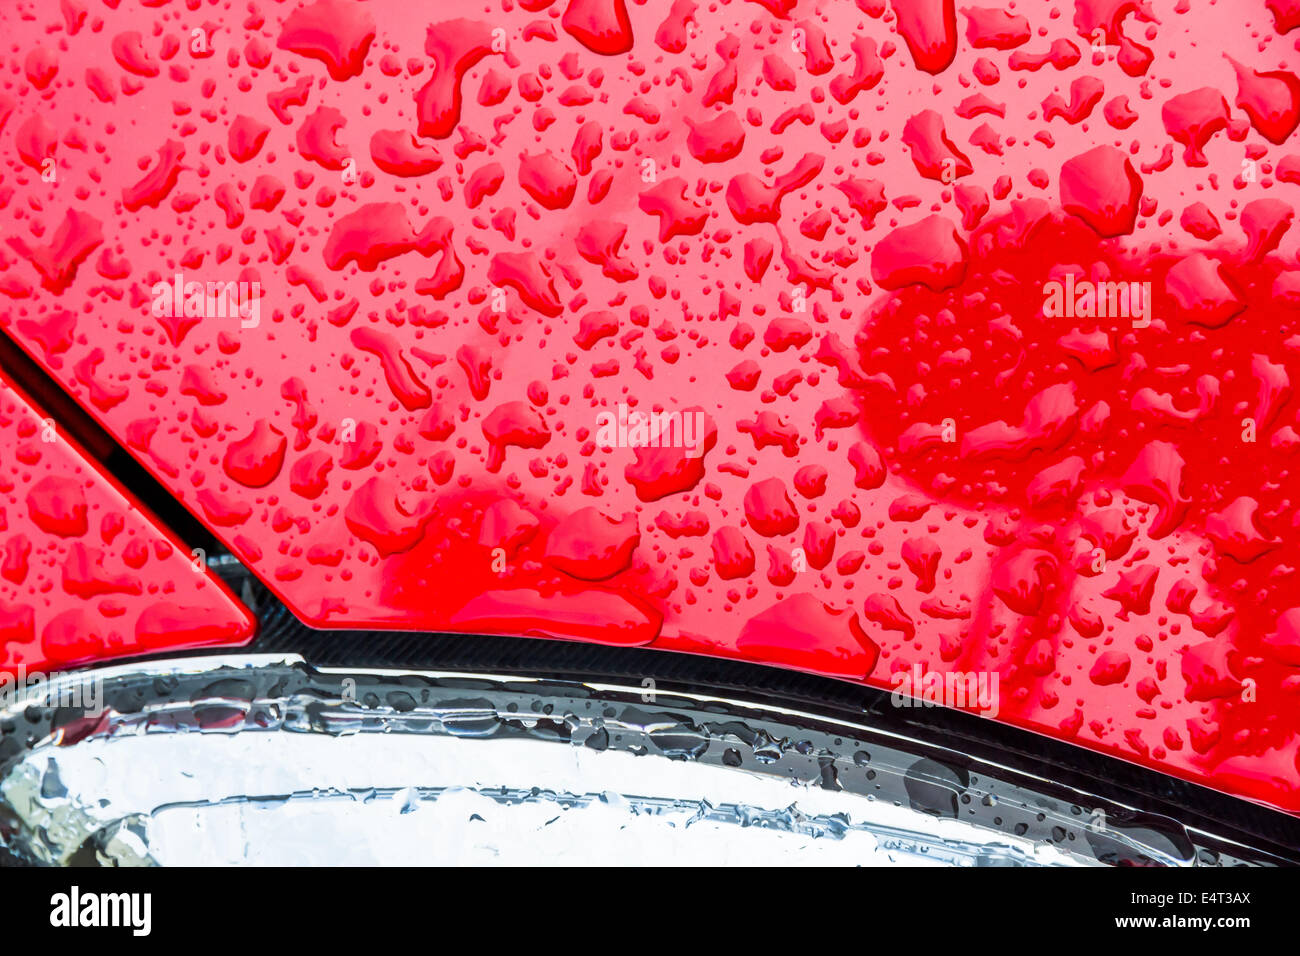 Después de una lluvia las gotas de lluvia sobre el barniz de un coche trickle down. Gotas de agua sobre un fondo rojo, Nach einem Regen perlen Regentrop Foto de stock